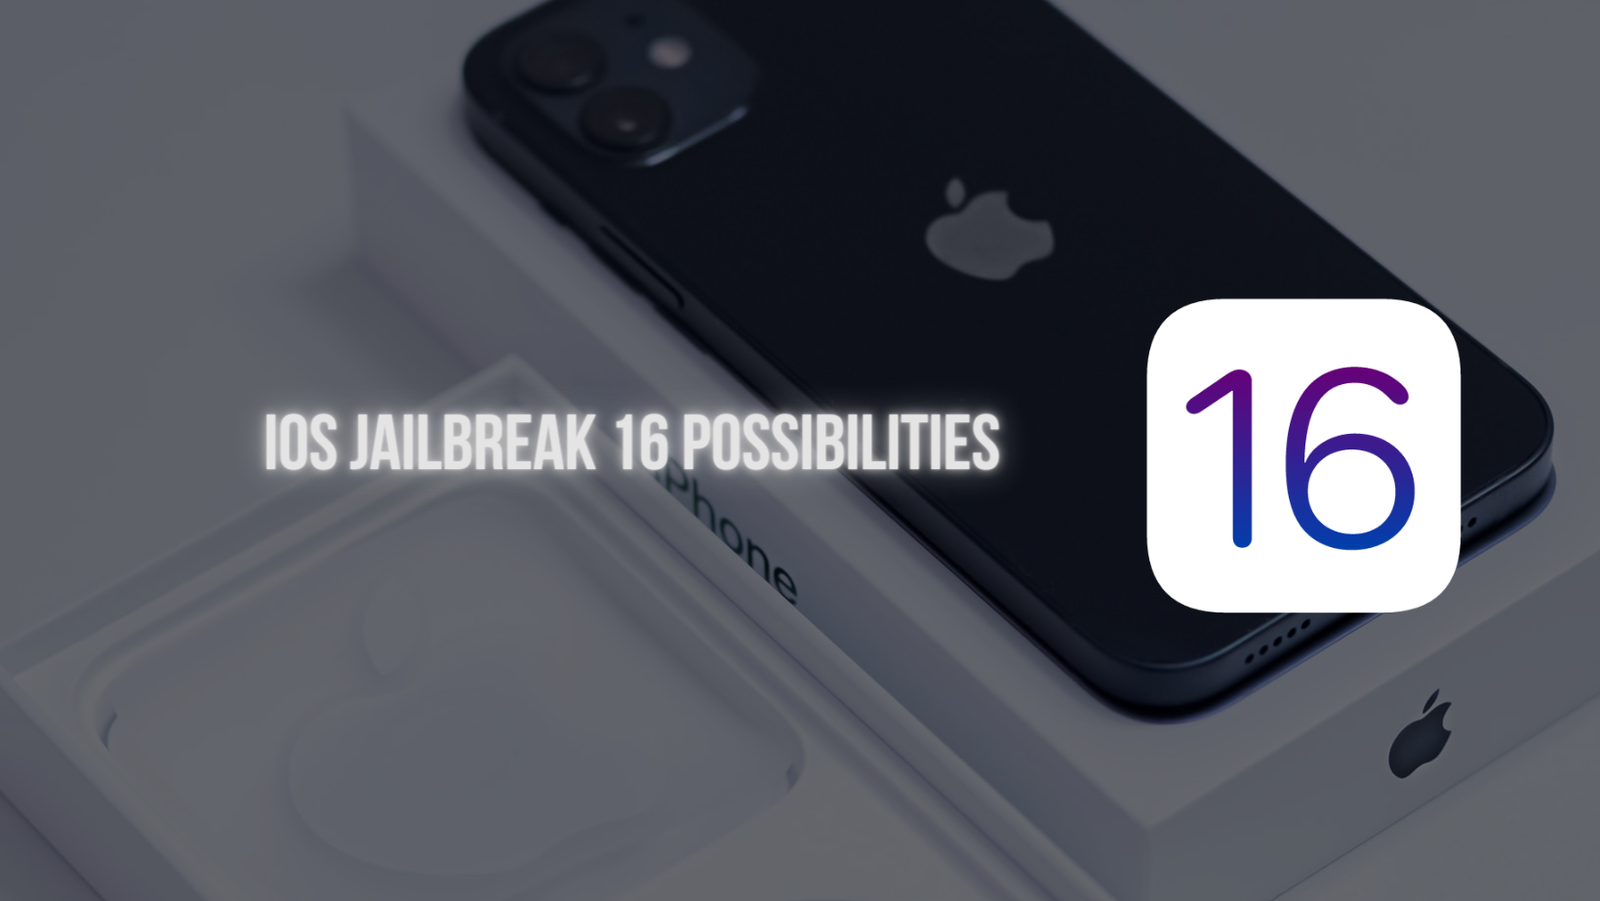 iOS Jailbreak 16